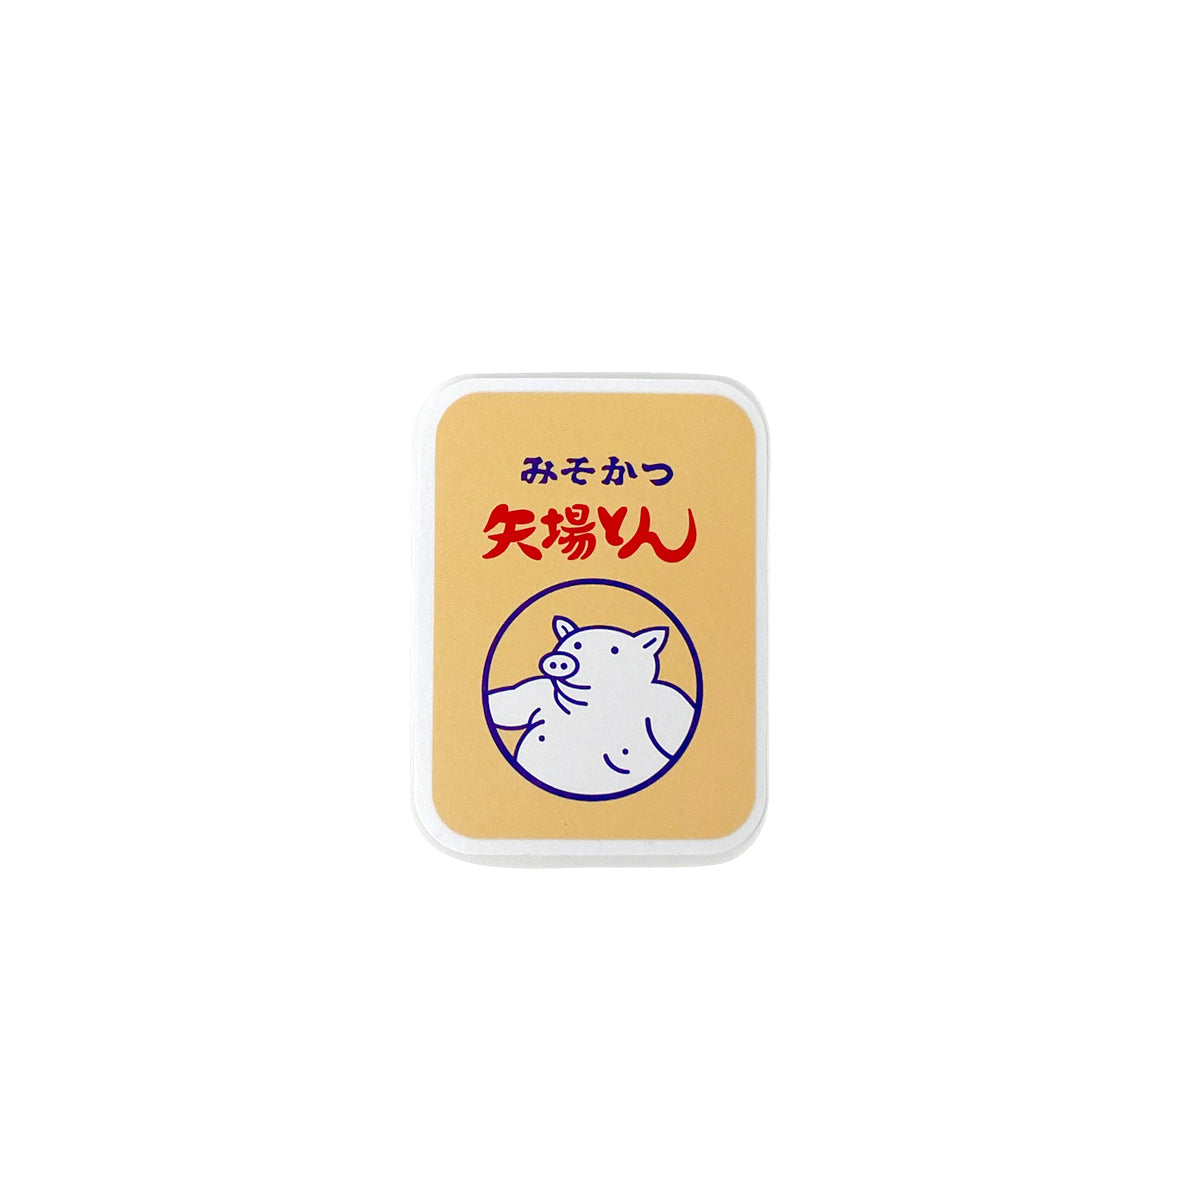 Yabaton Misokatsu Bento Sticker